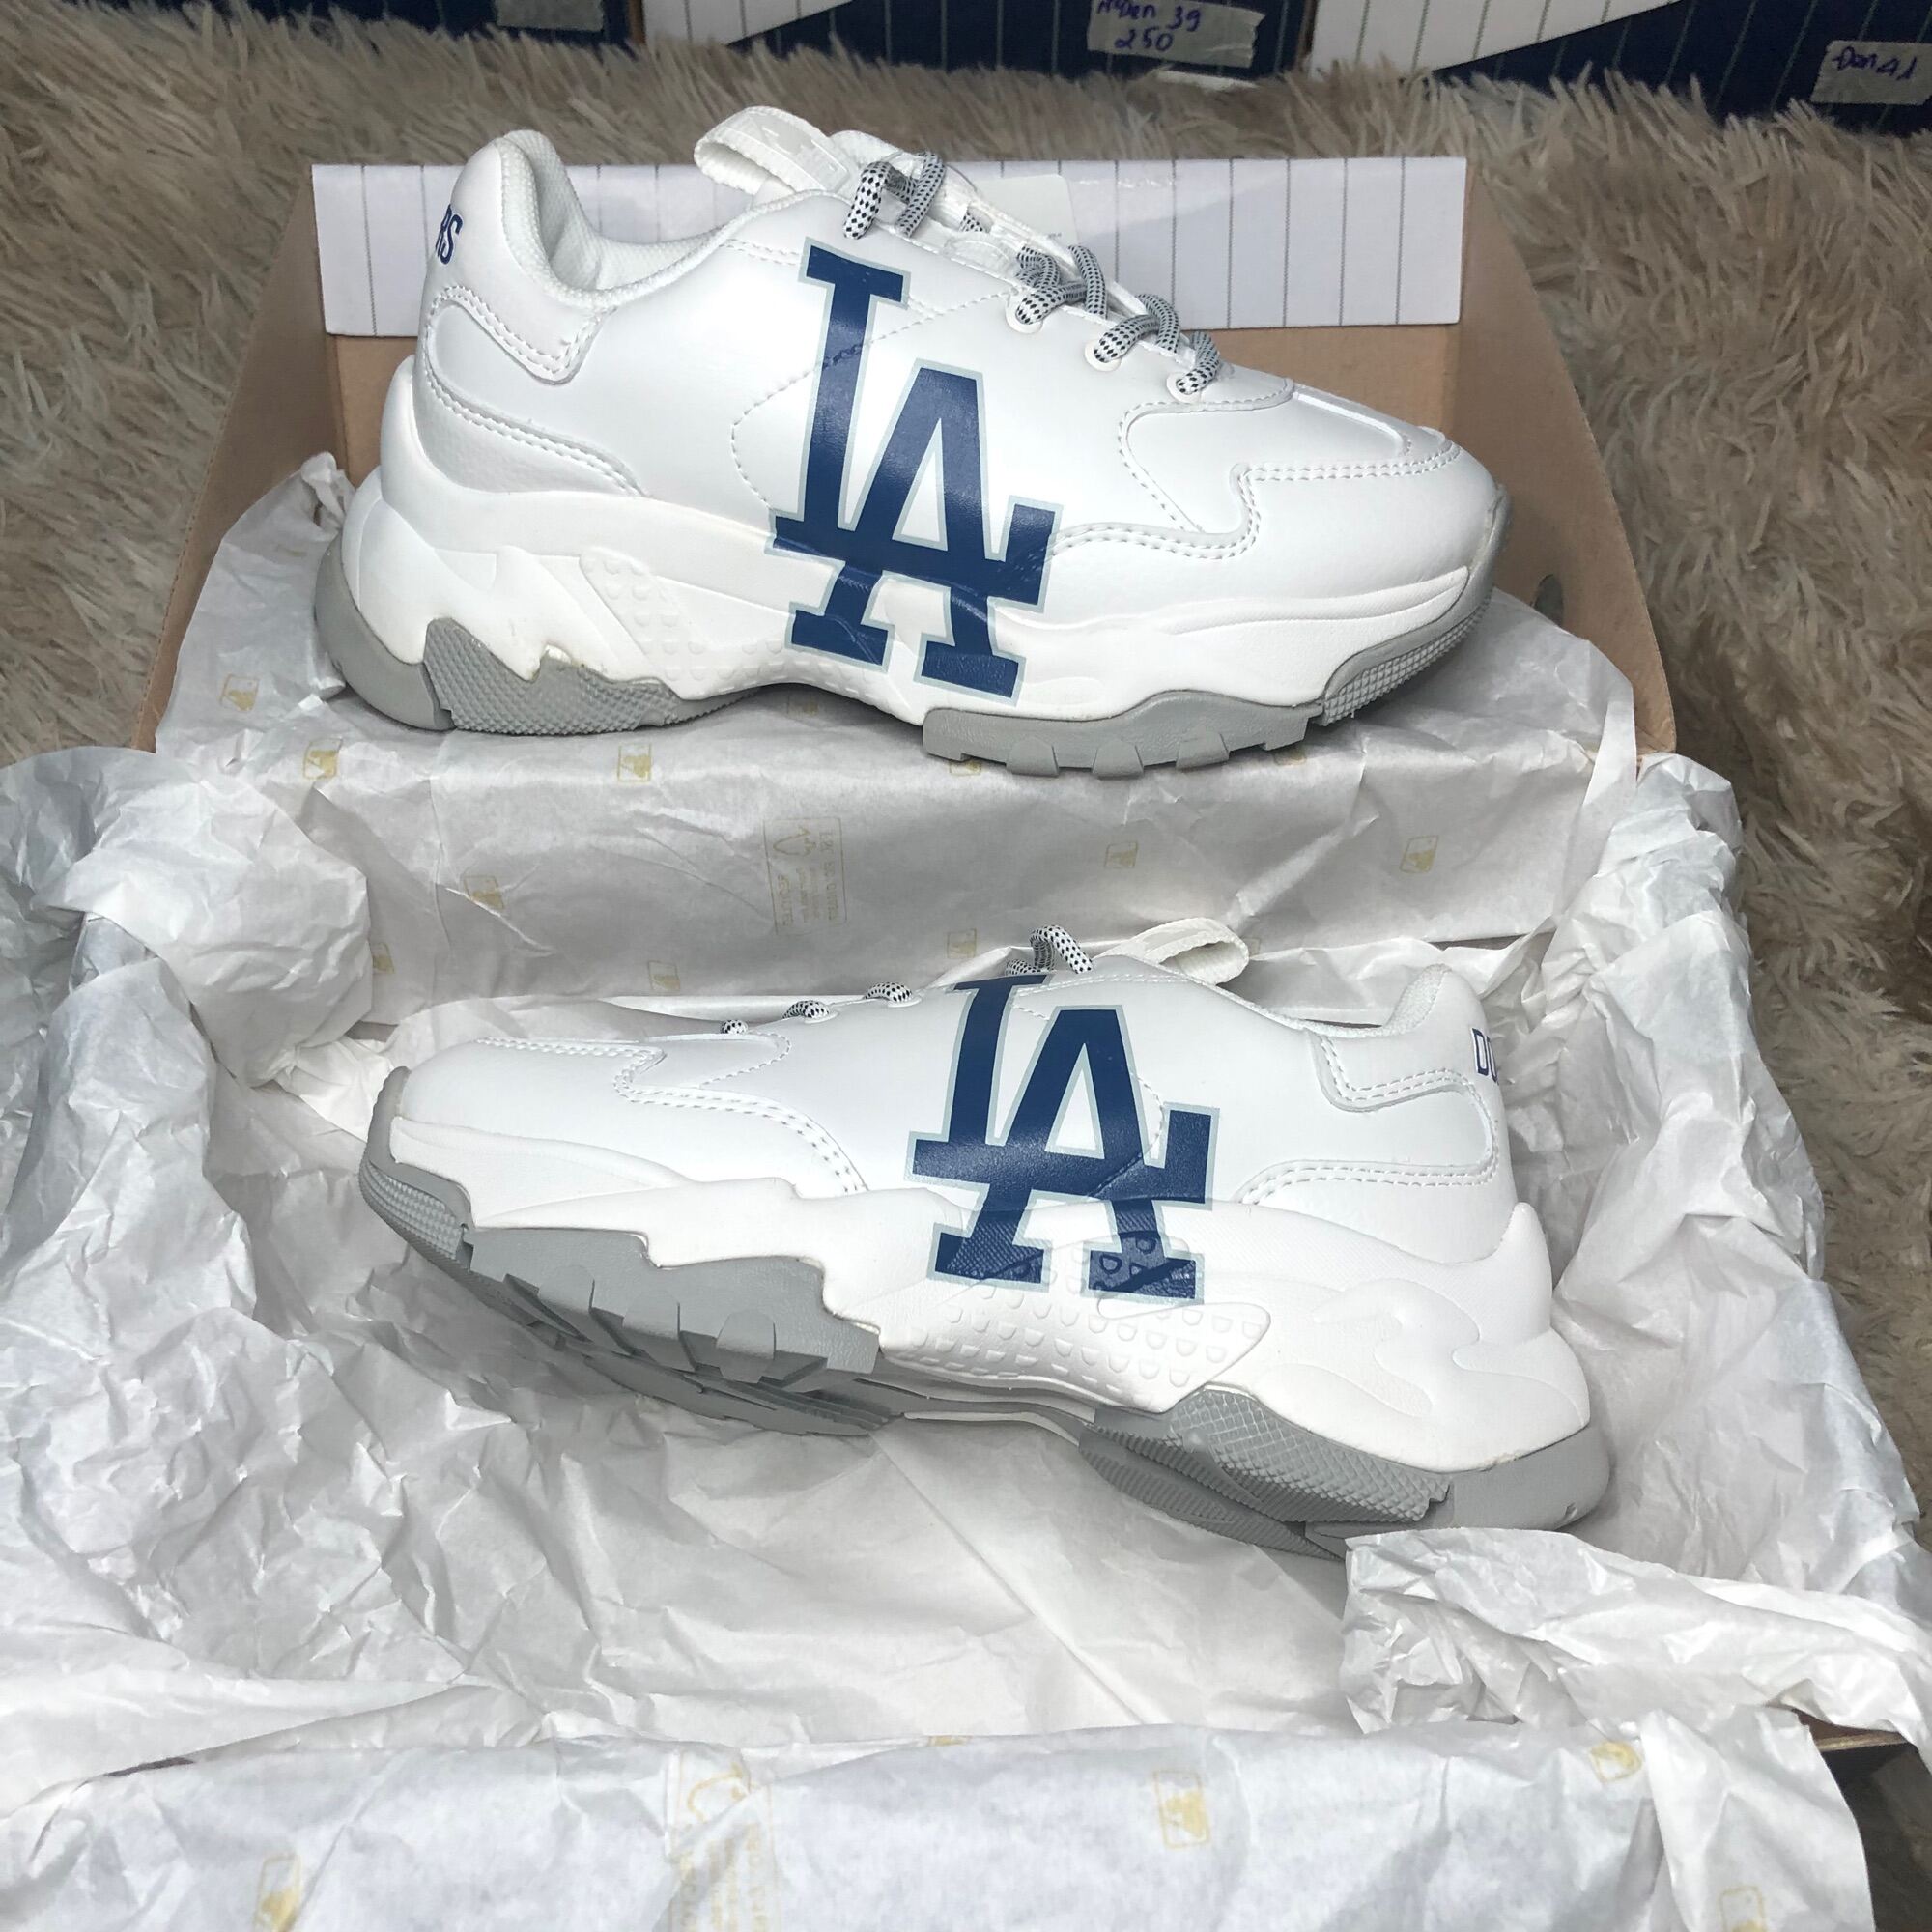 Giày MLB Sneaker LA  Uspox  Siêu thị giày thể thao chính hãng